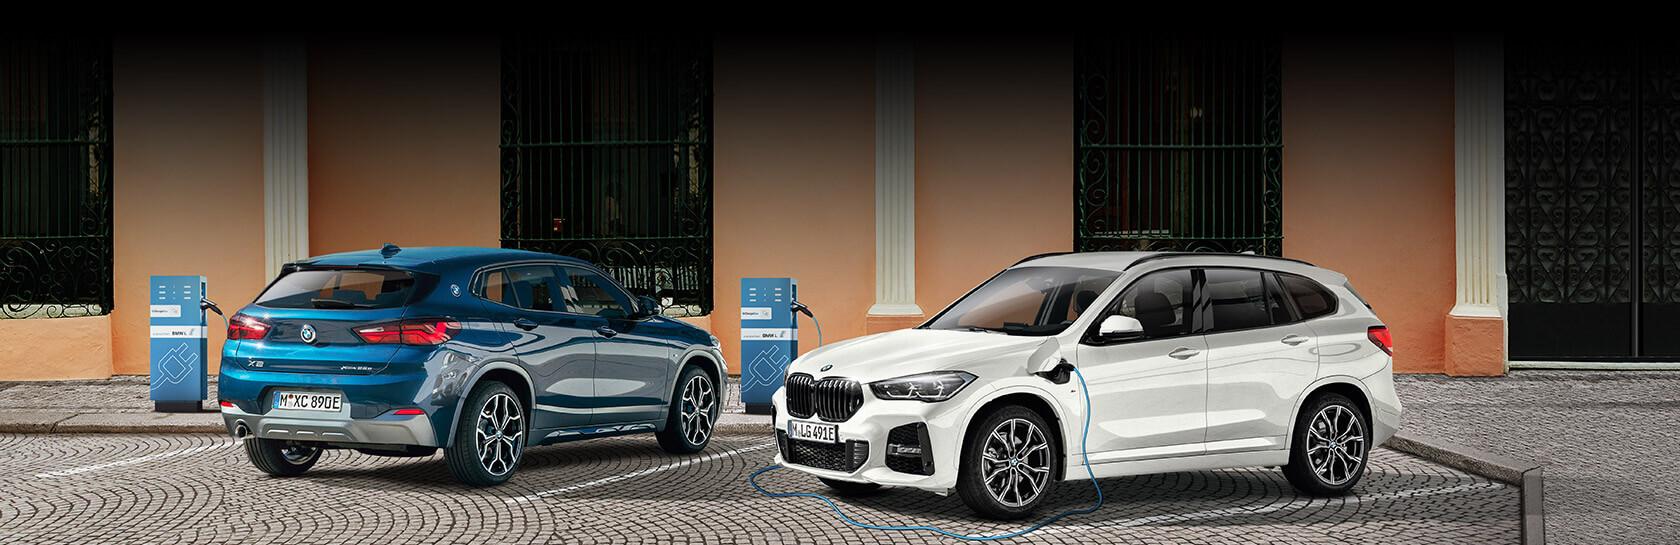 Nouvelles BMW X1 et X2 hybrides rechargeables